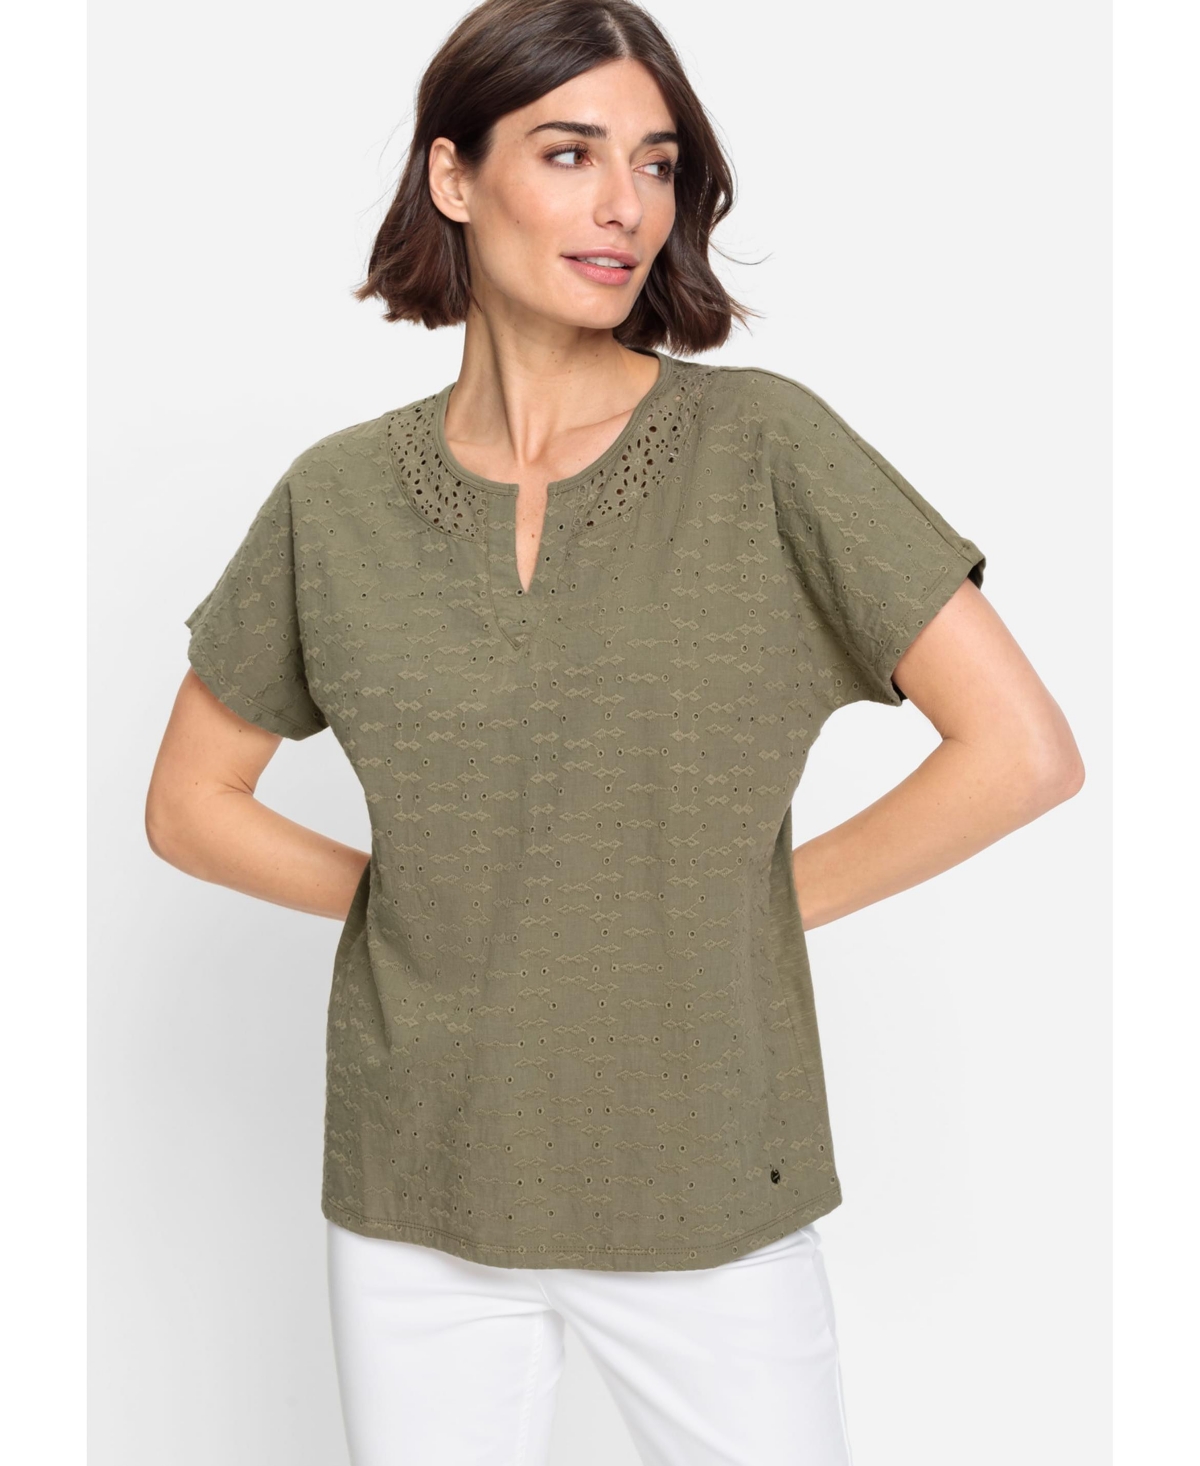 Women's 100% Cotton Short Sleeve Split Neck Eyelet T-Shirt - Dk khaki